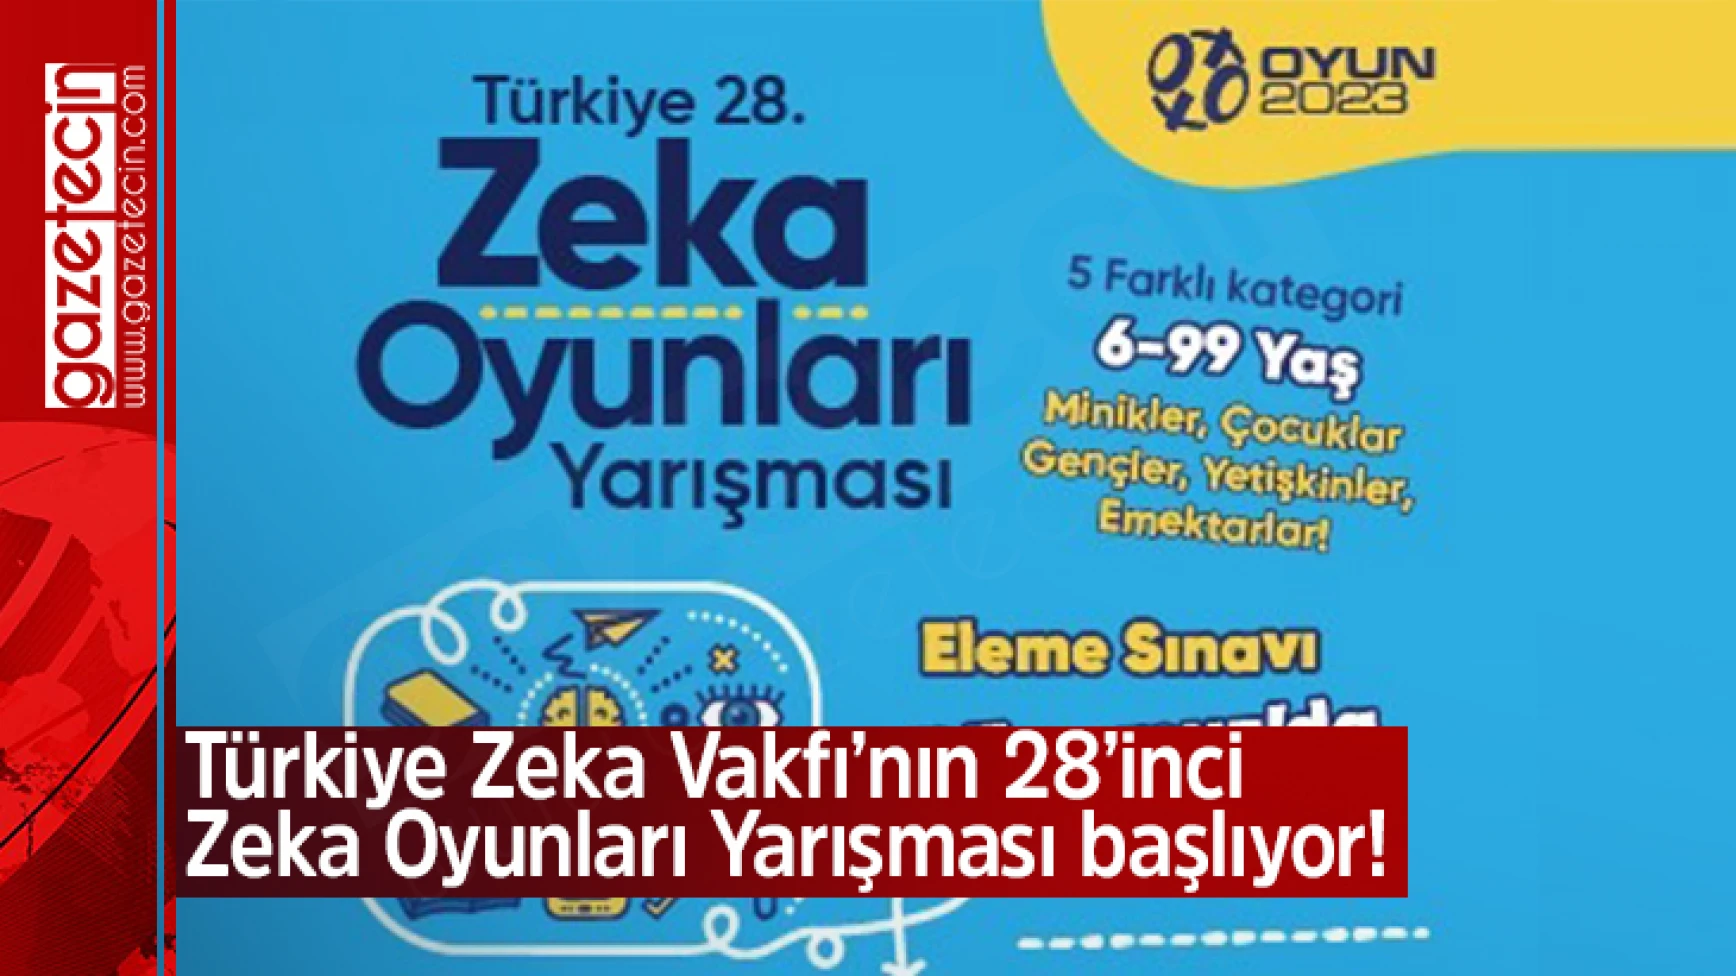 Türkiye Zeka Vakfı’nın 28’inci Zeka Oyunları Yarışması başlıyor